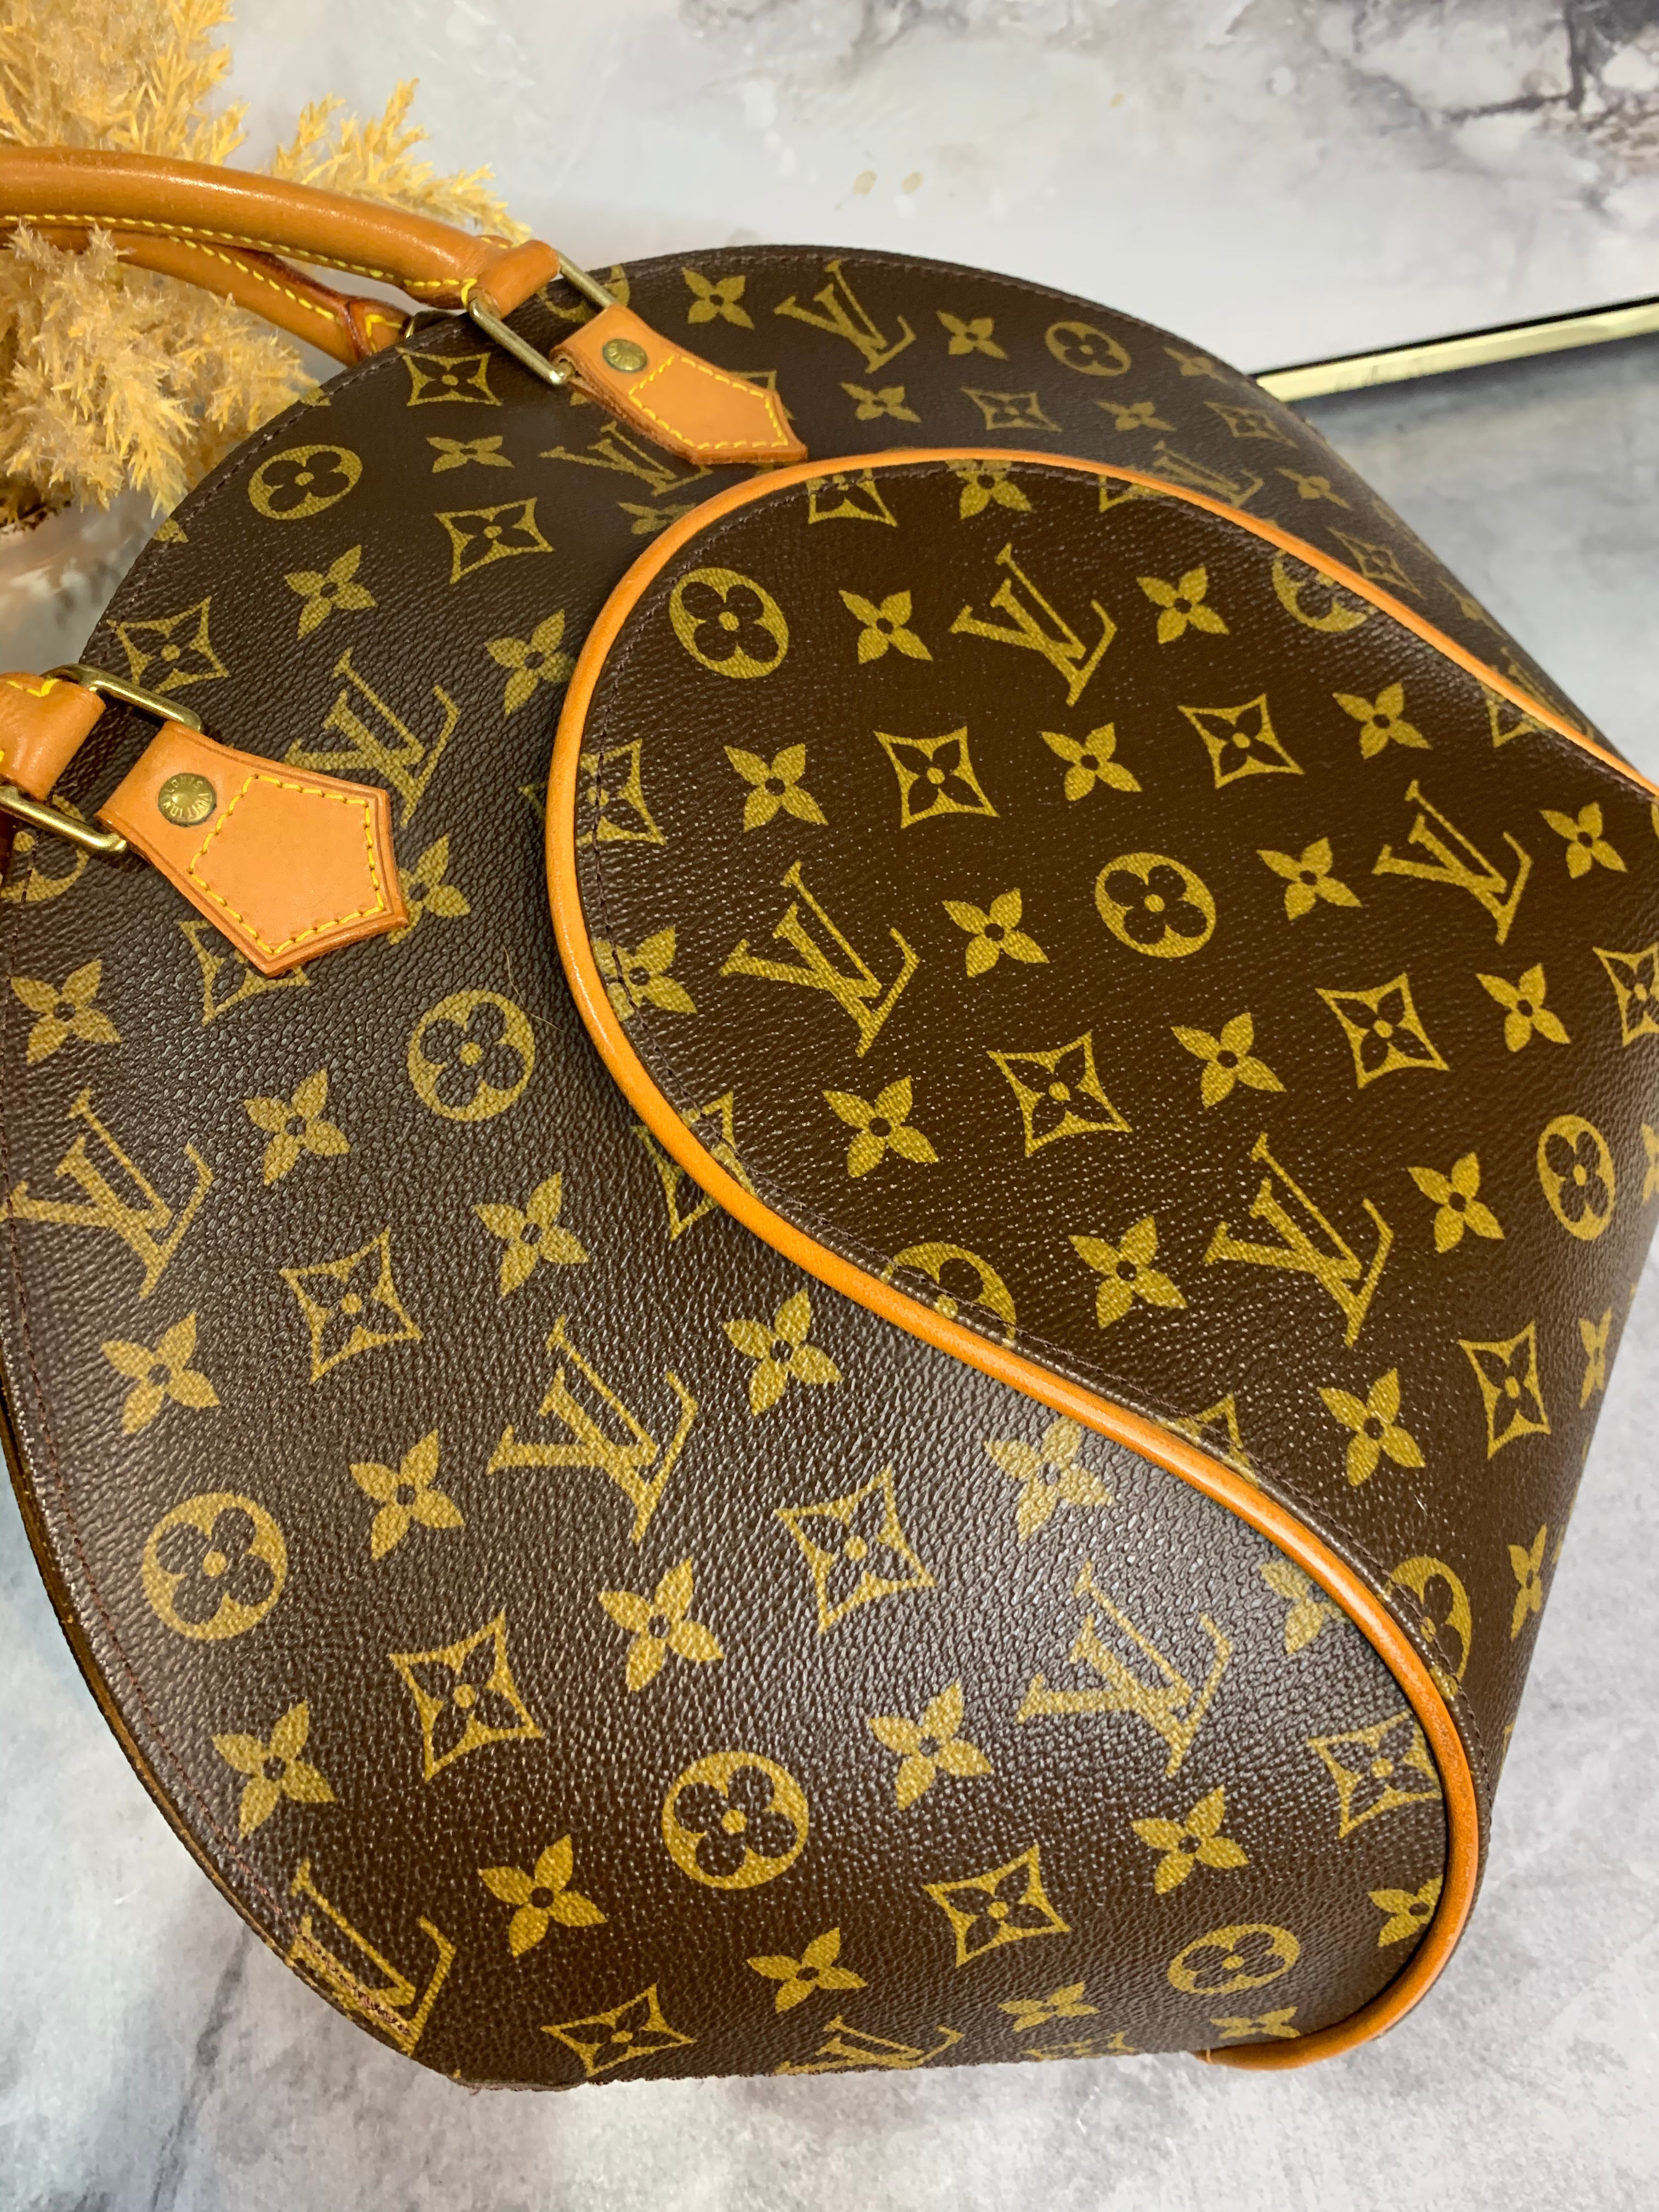 Vintage Louis Vuitton Ellipse MM Monogram Handbag • 950$  Louis vuitton  handbags crossbody, Louis vuitton handbags speedy, Louis vuitton bag  neverfull